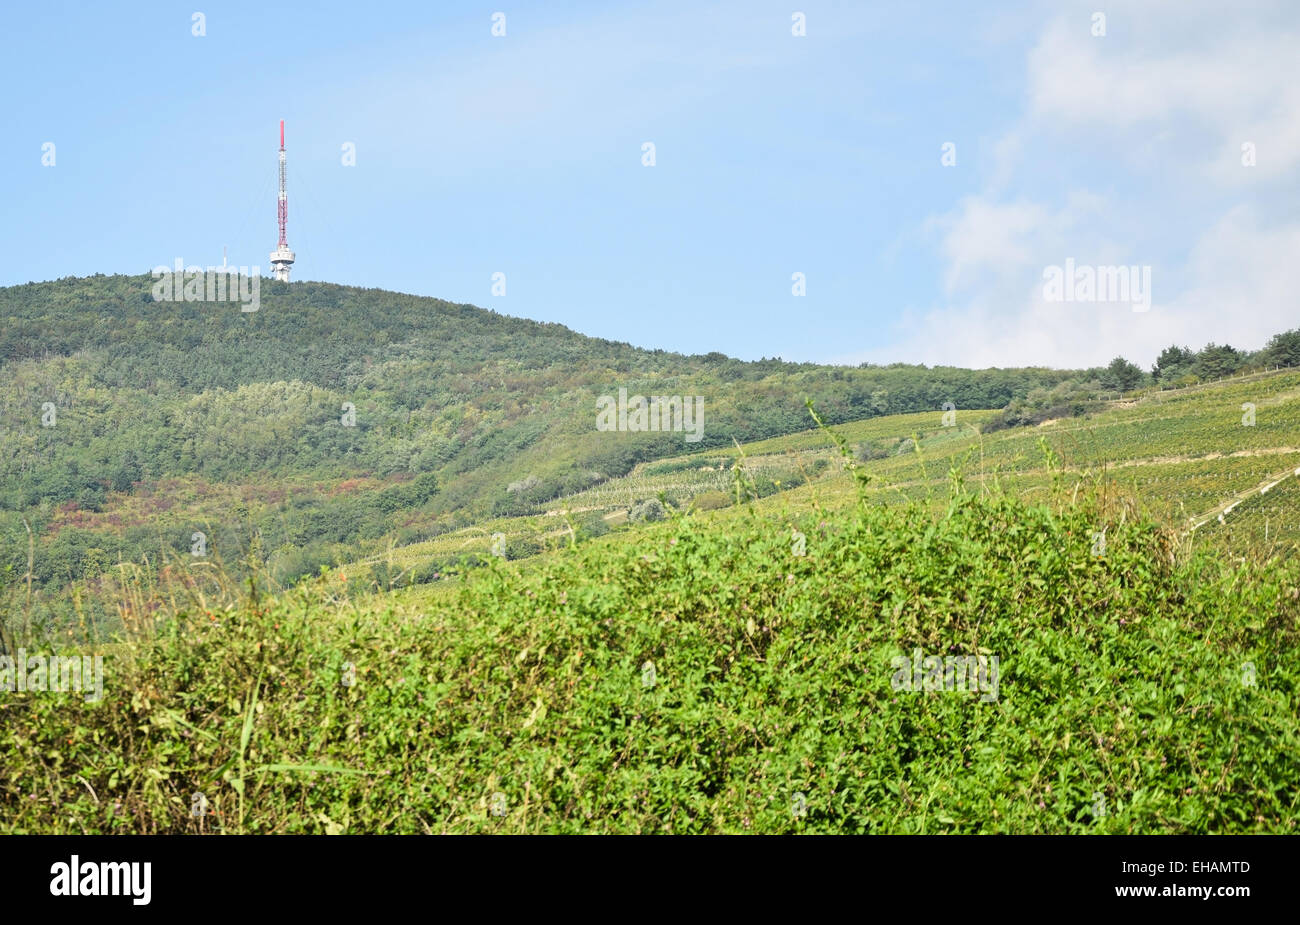 Vineyards at the hill-side near Tokaj city, Hungary Stock Photo